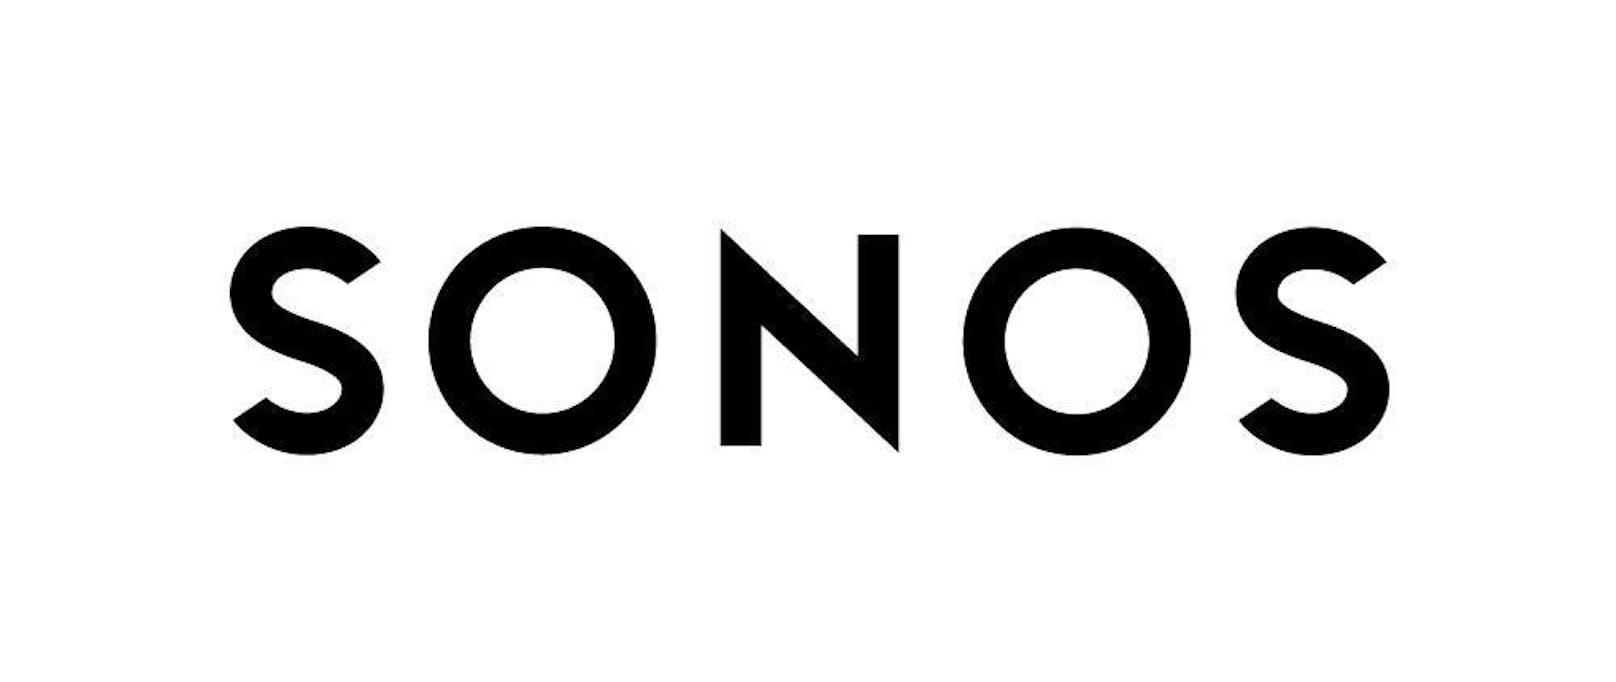 Sonos geht an die Börse und notiert als SONO an der Nasdaq. Das Papier beendete den ersten Handelstag mit einem Plus von 32,73 Prozent auf 19,91 Dollar. Die Aktien wurde anfangs günstiger als geplant verkauft. Beim Börsenstart wurden sie mit etwa 1,5 Milliarden Dollar (1,29 Mrd. Euro) bewertet.